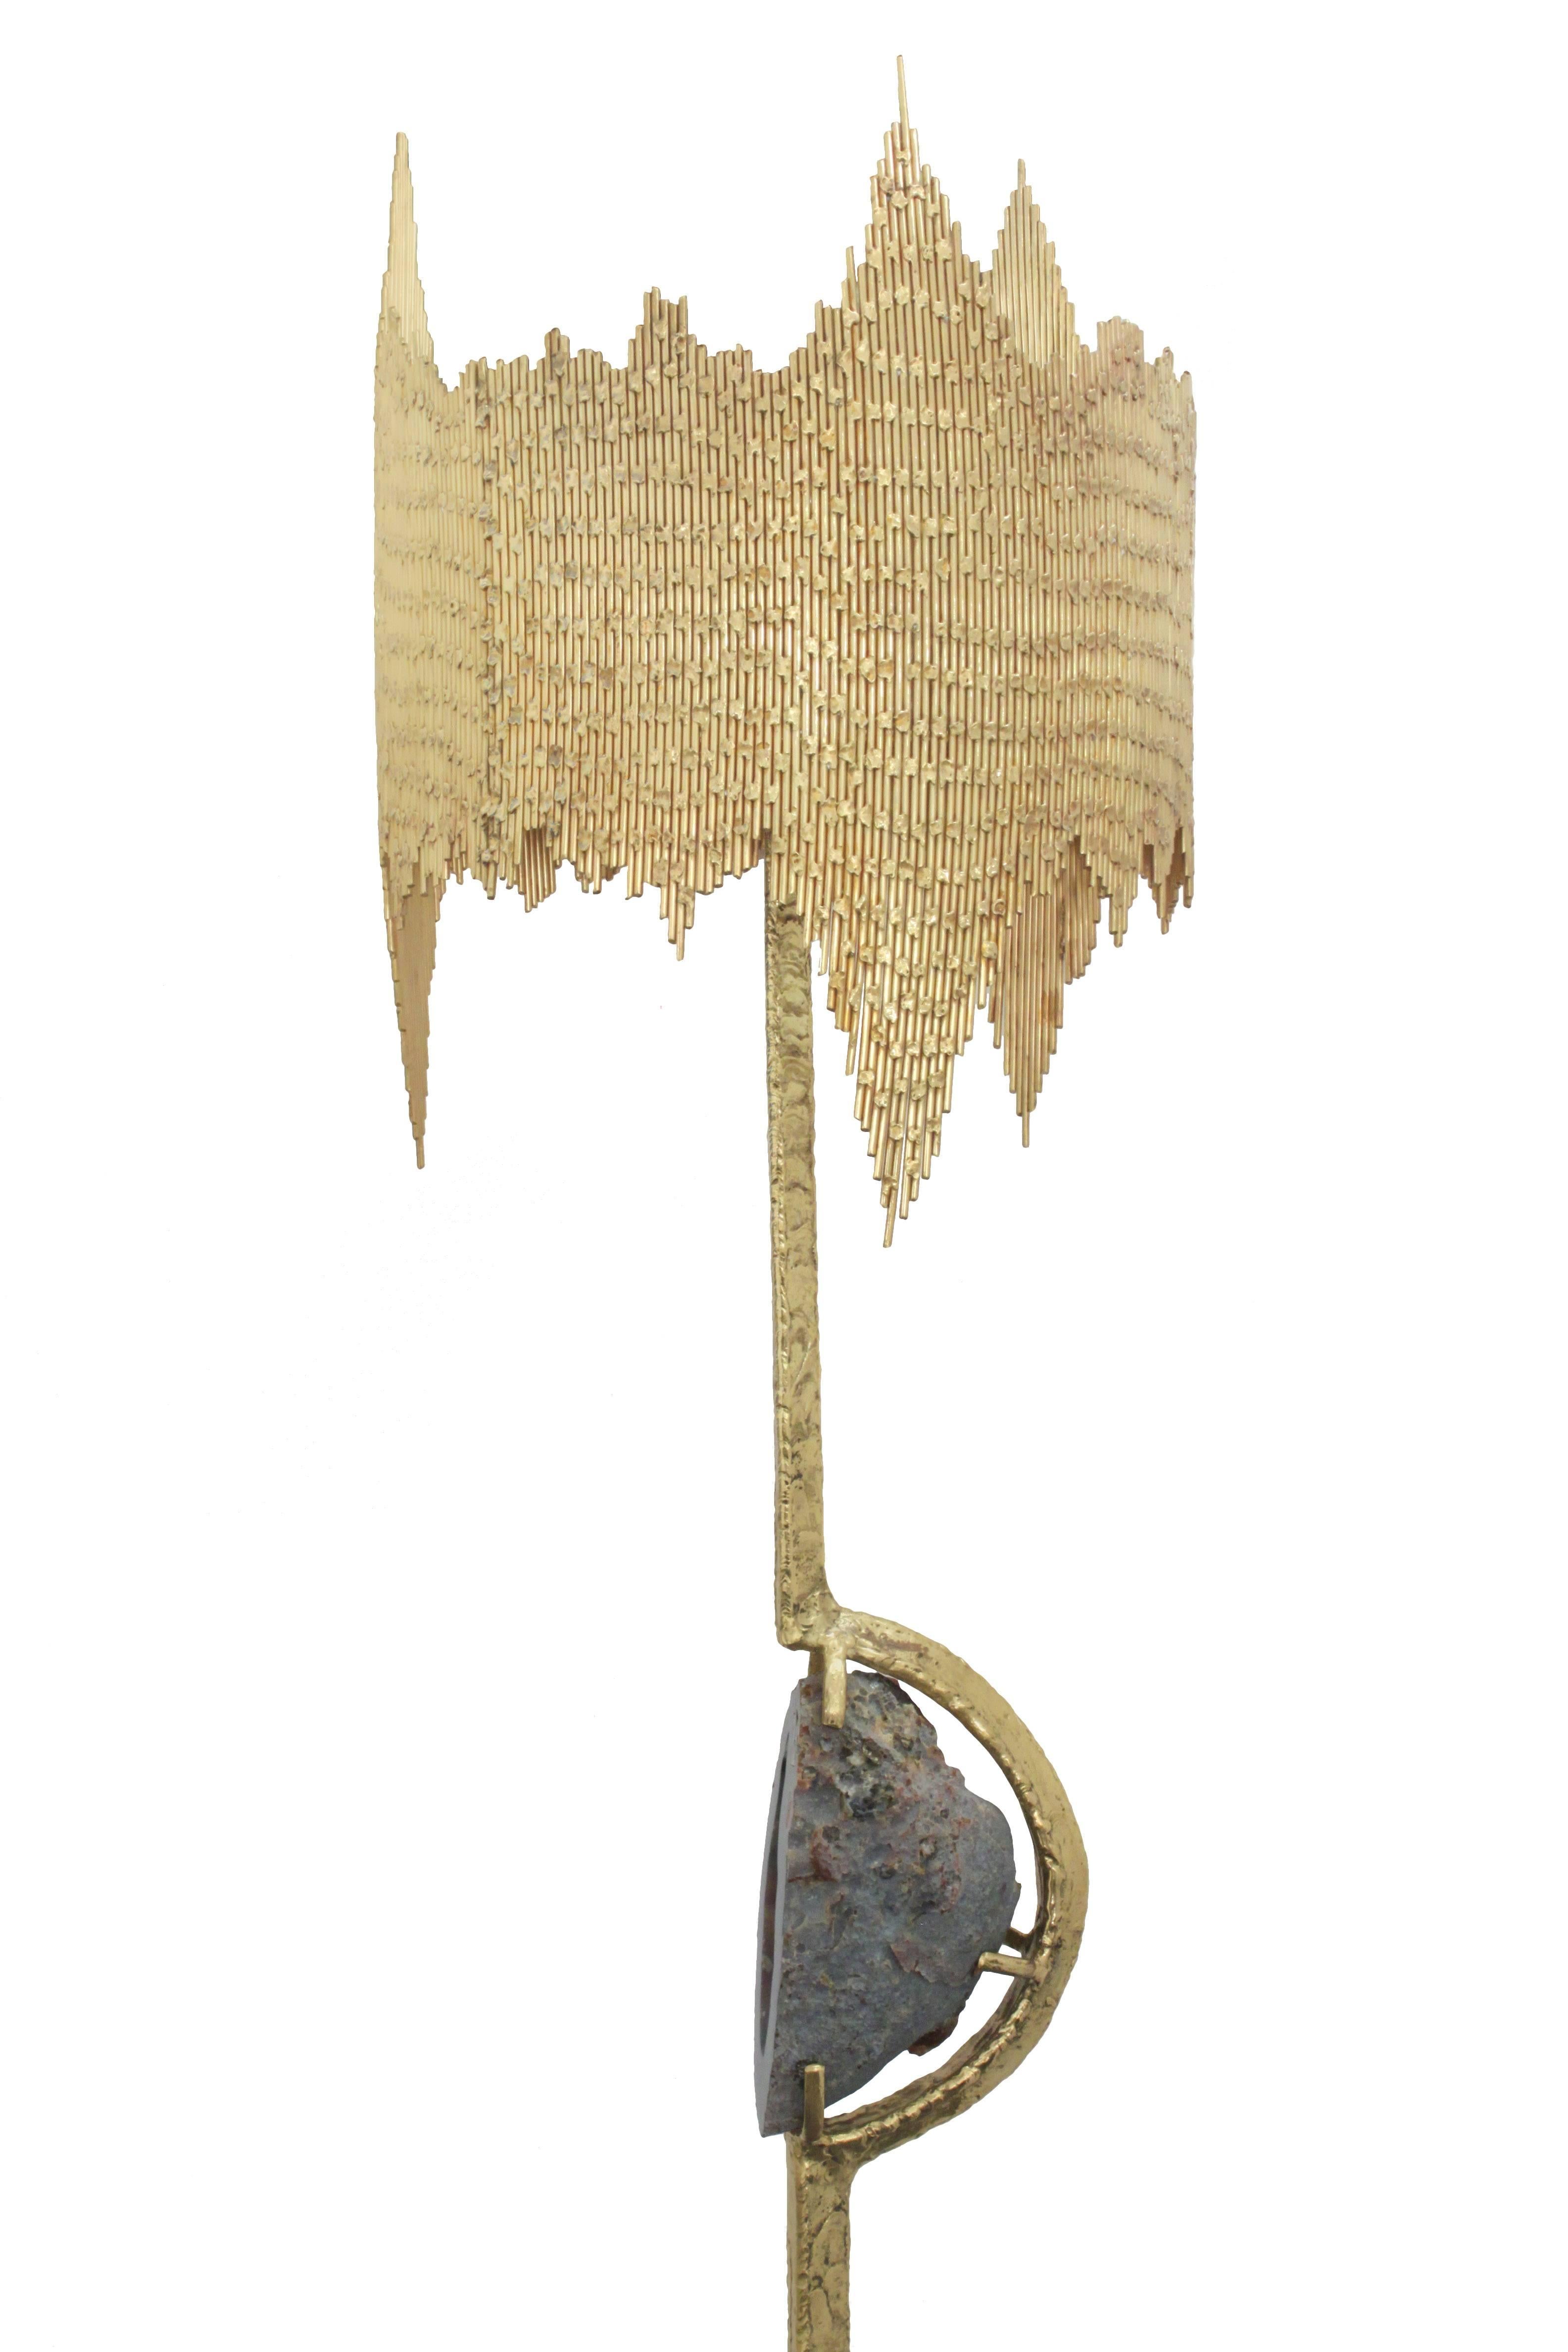 Einzigartige und außergewöhnliche Lampe aus handgeschweißtem Messing mit montiertem Achat und perforiertem, geschweißtem Schirm von Jacques Duval-Brasseur, Frankreich 1970er Jahre (signiert 